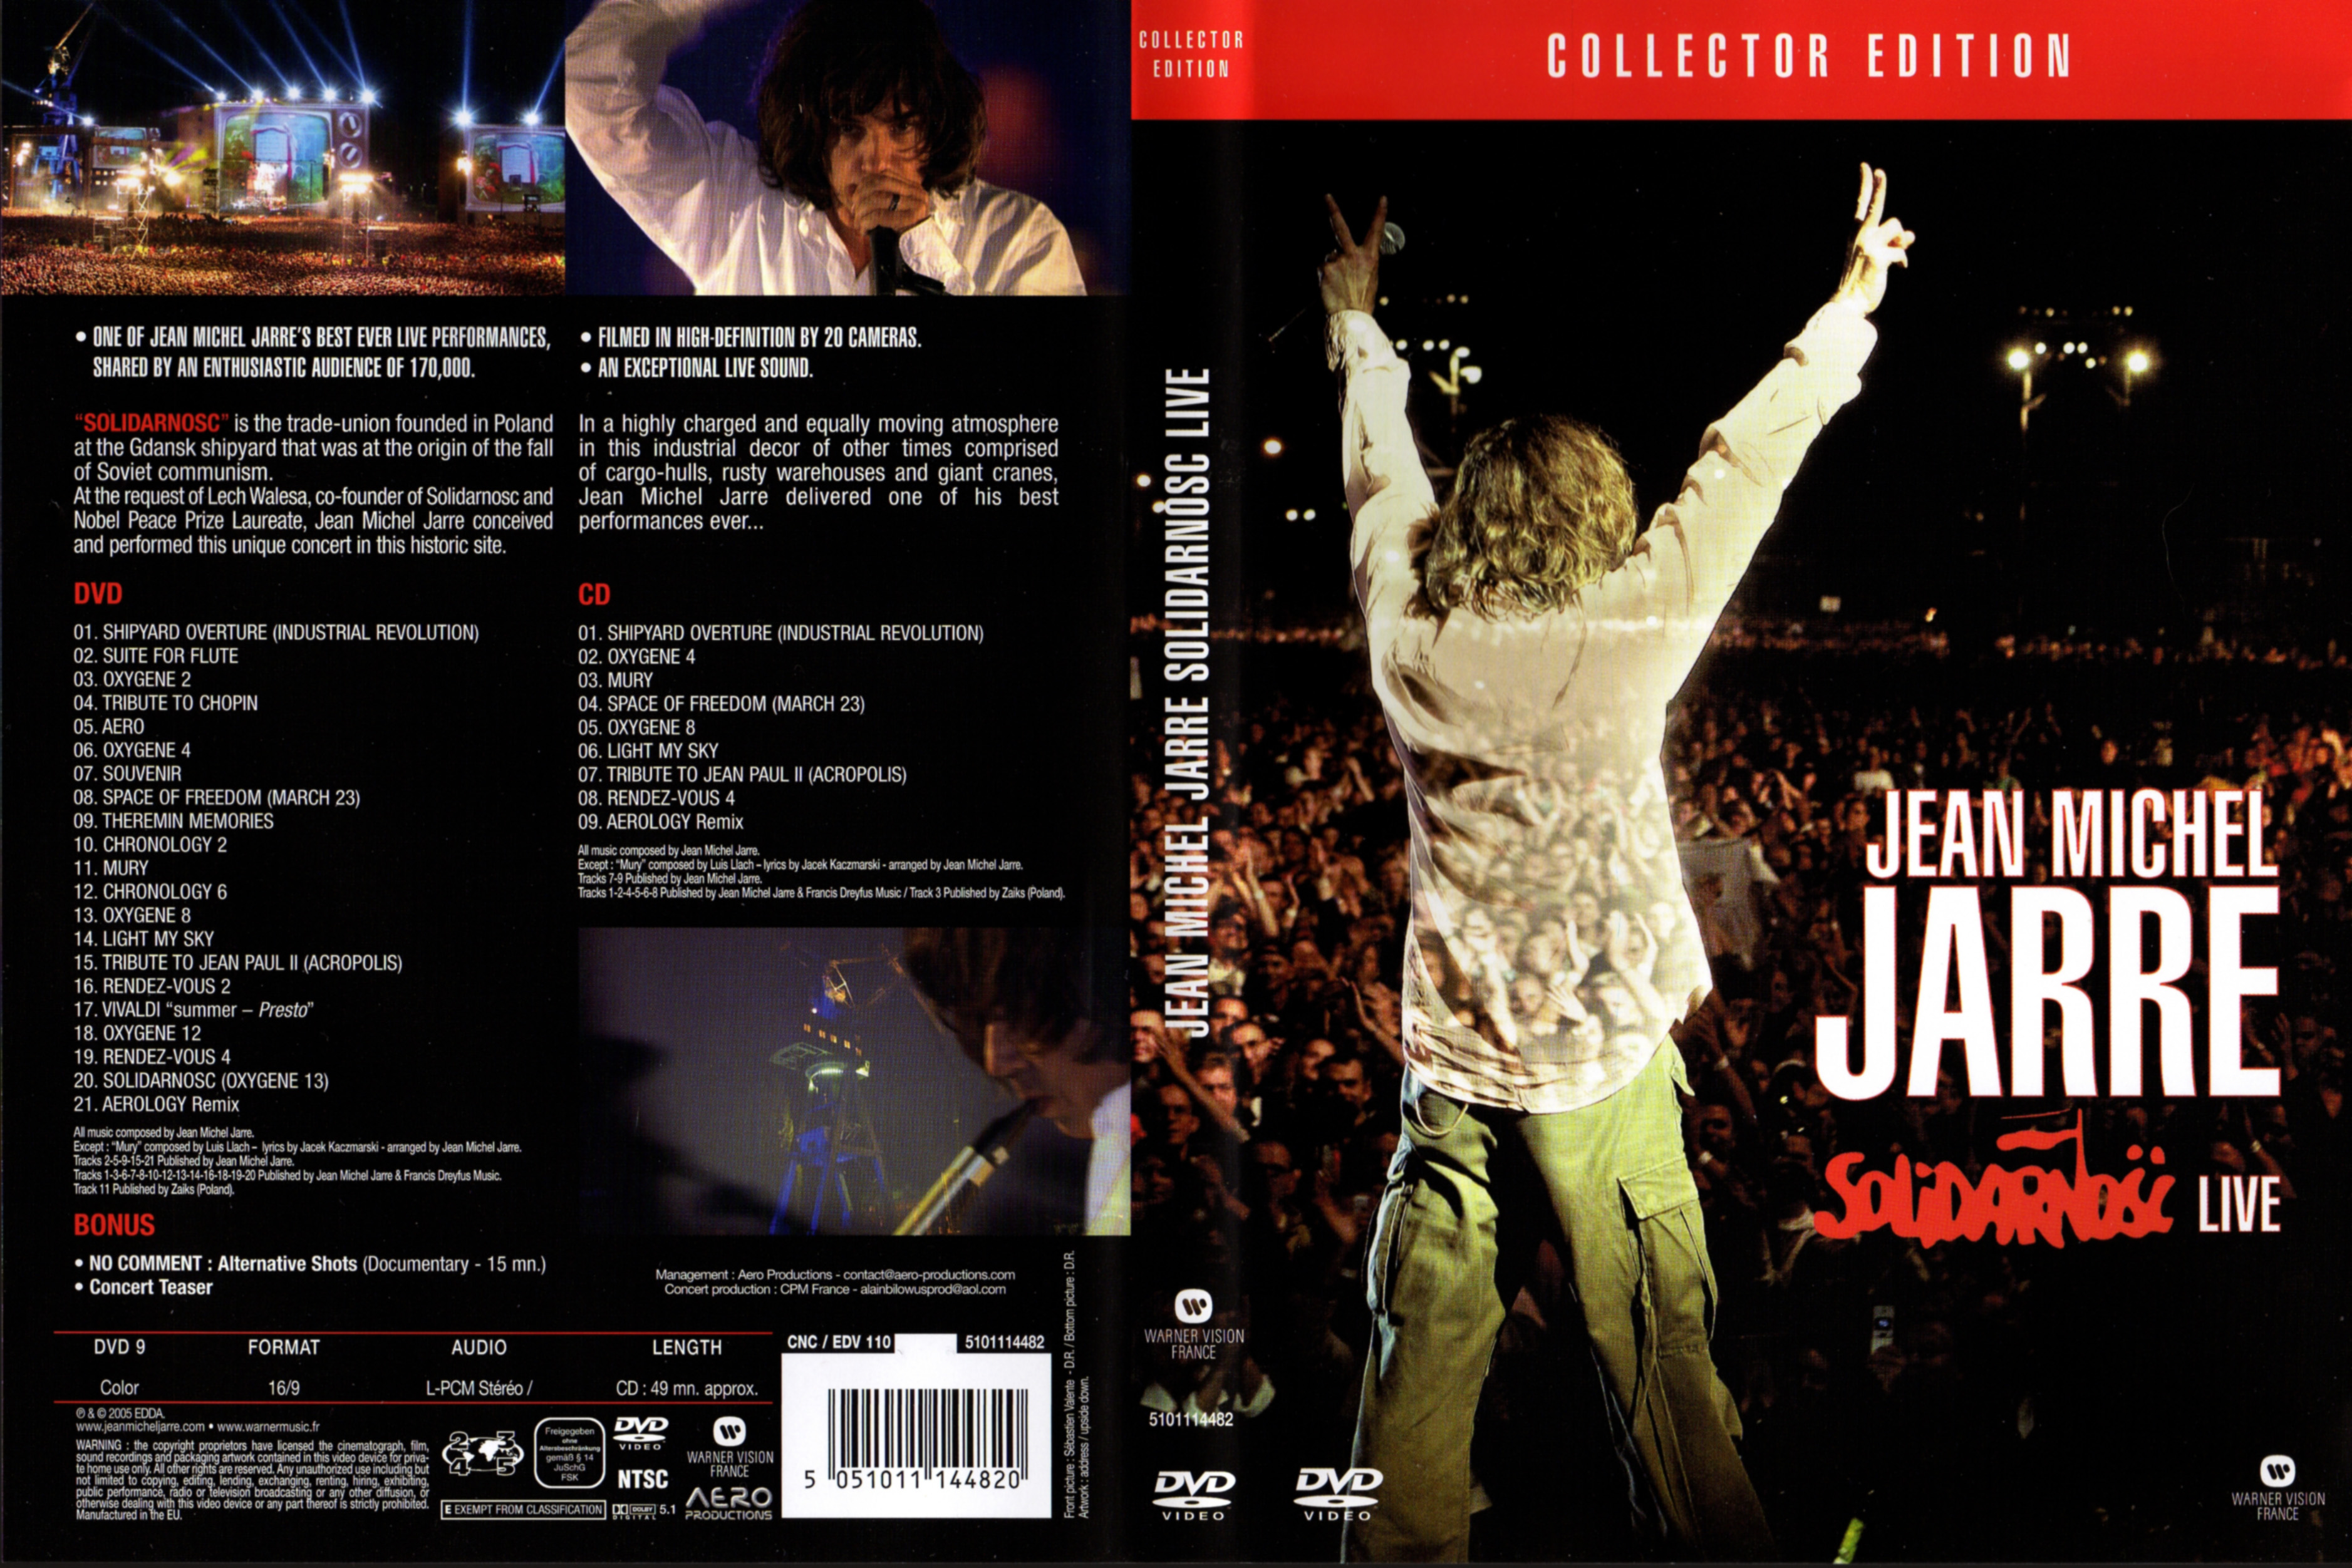 Jaquette DVD Jean-Michel Jarre - Solidarnosc live v2